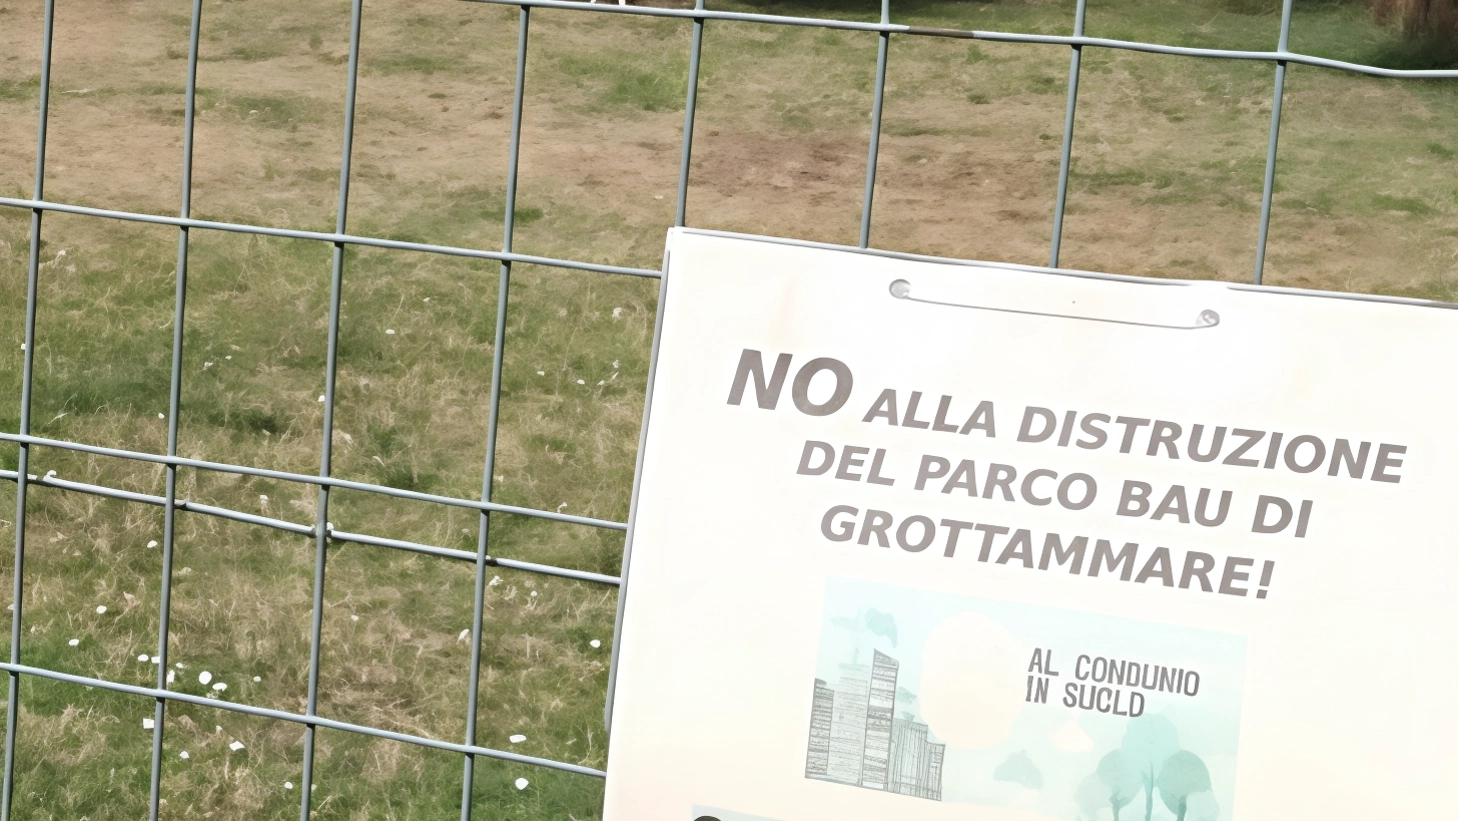 Una petizione a Grottammare chiede di fermare i lavori di un cantiere che sottrarrà 1500mq di verde pubblico. Il comitato Riviera Verde ha raccolto oltre 10mila firme in 100 giorni, evidenziando l'importanza della tutela degli spazi verdi urbani per la qualità della vita e la biodiversità.